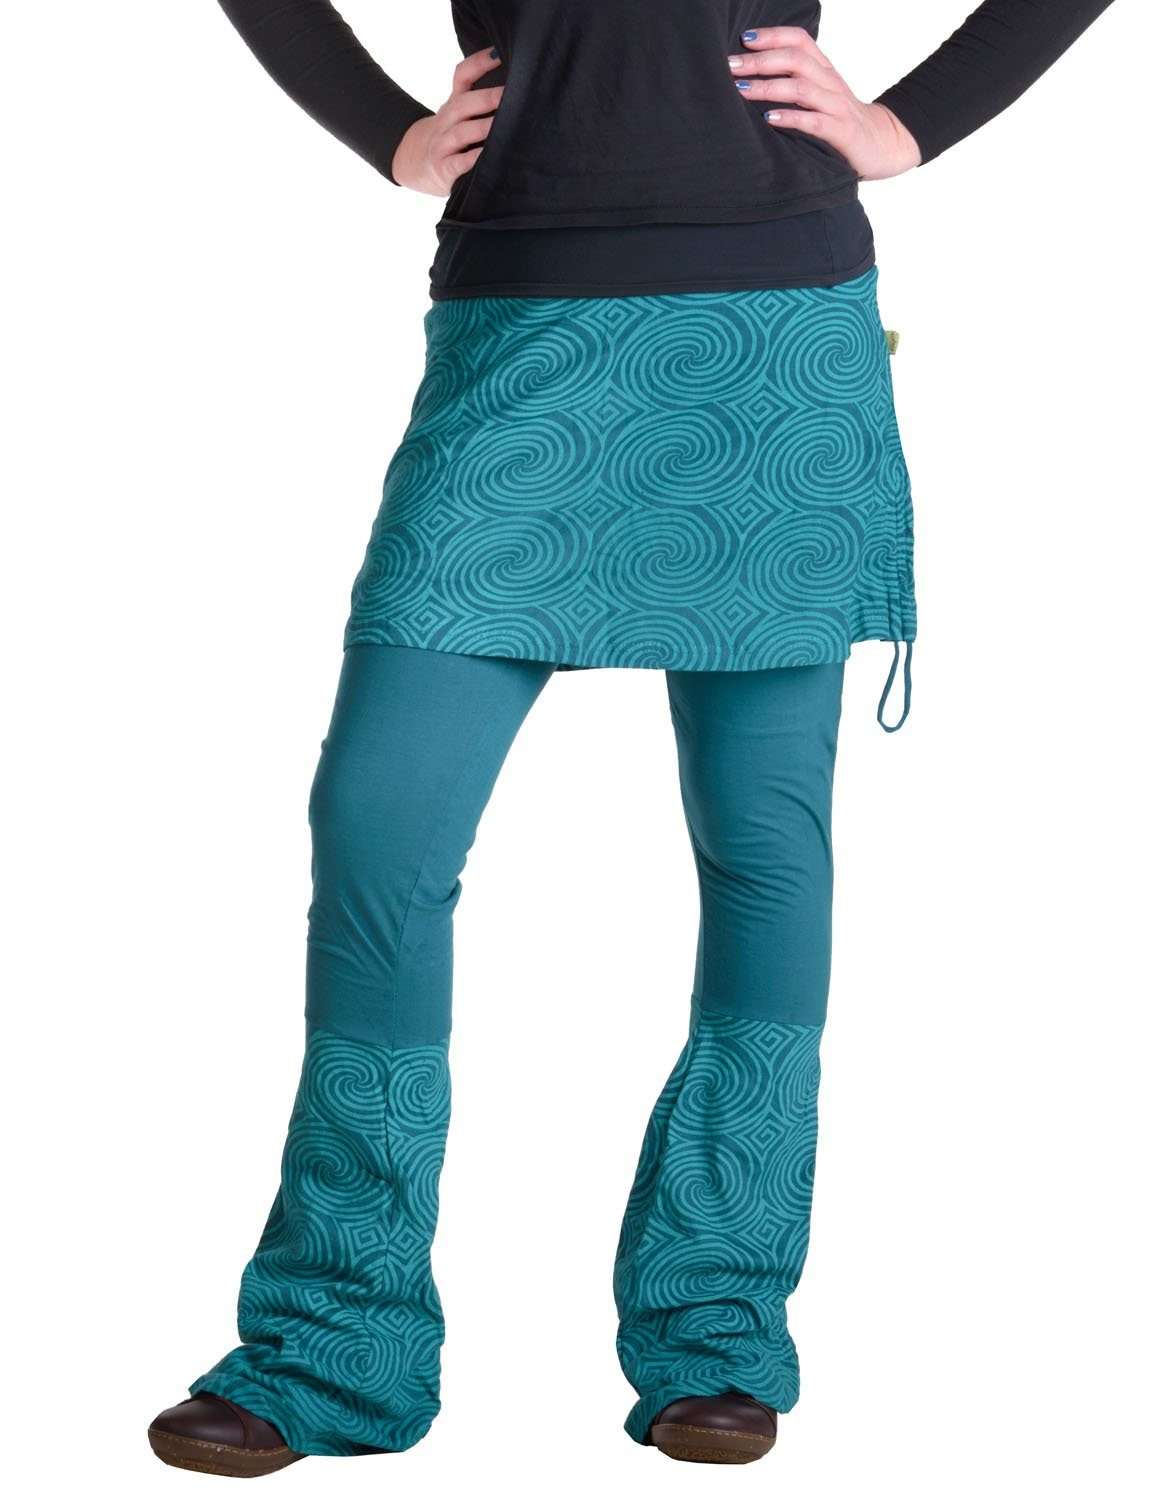 Комбинация юбка-кюлоты, брюки-клеш - длинный размер Goa